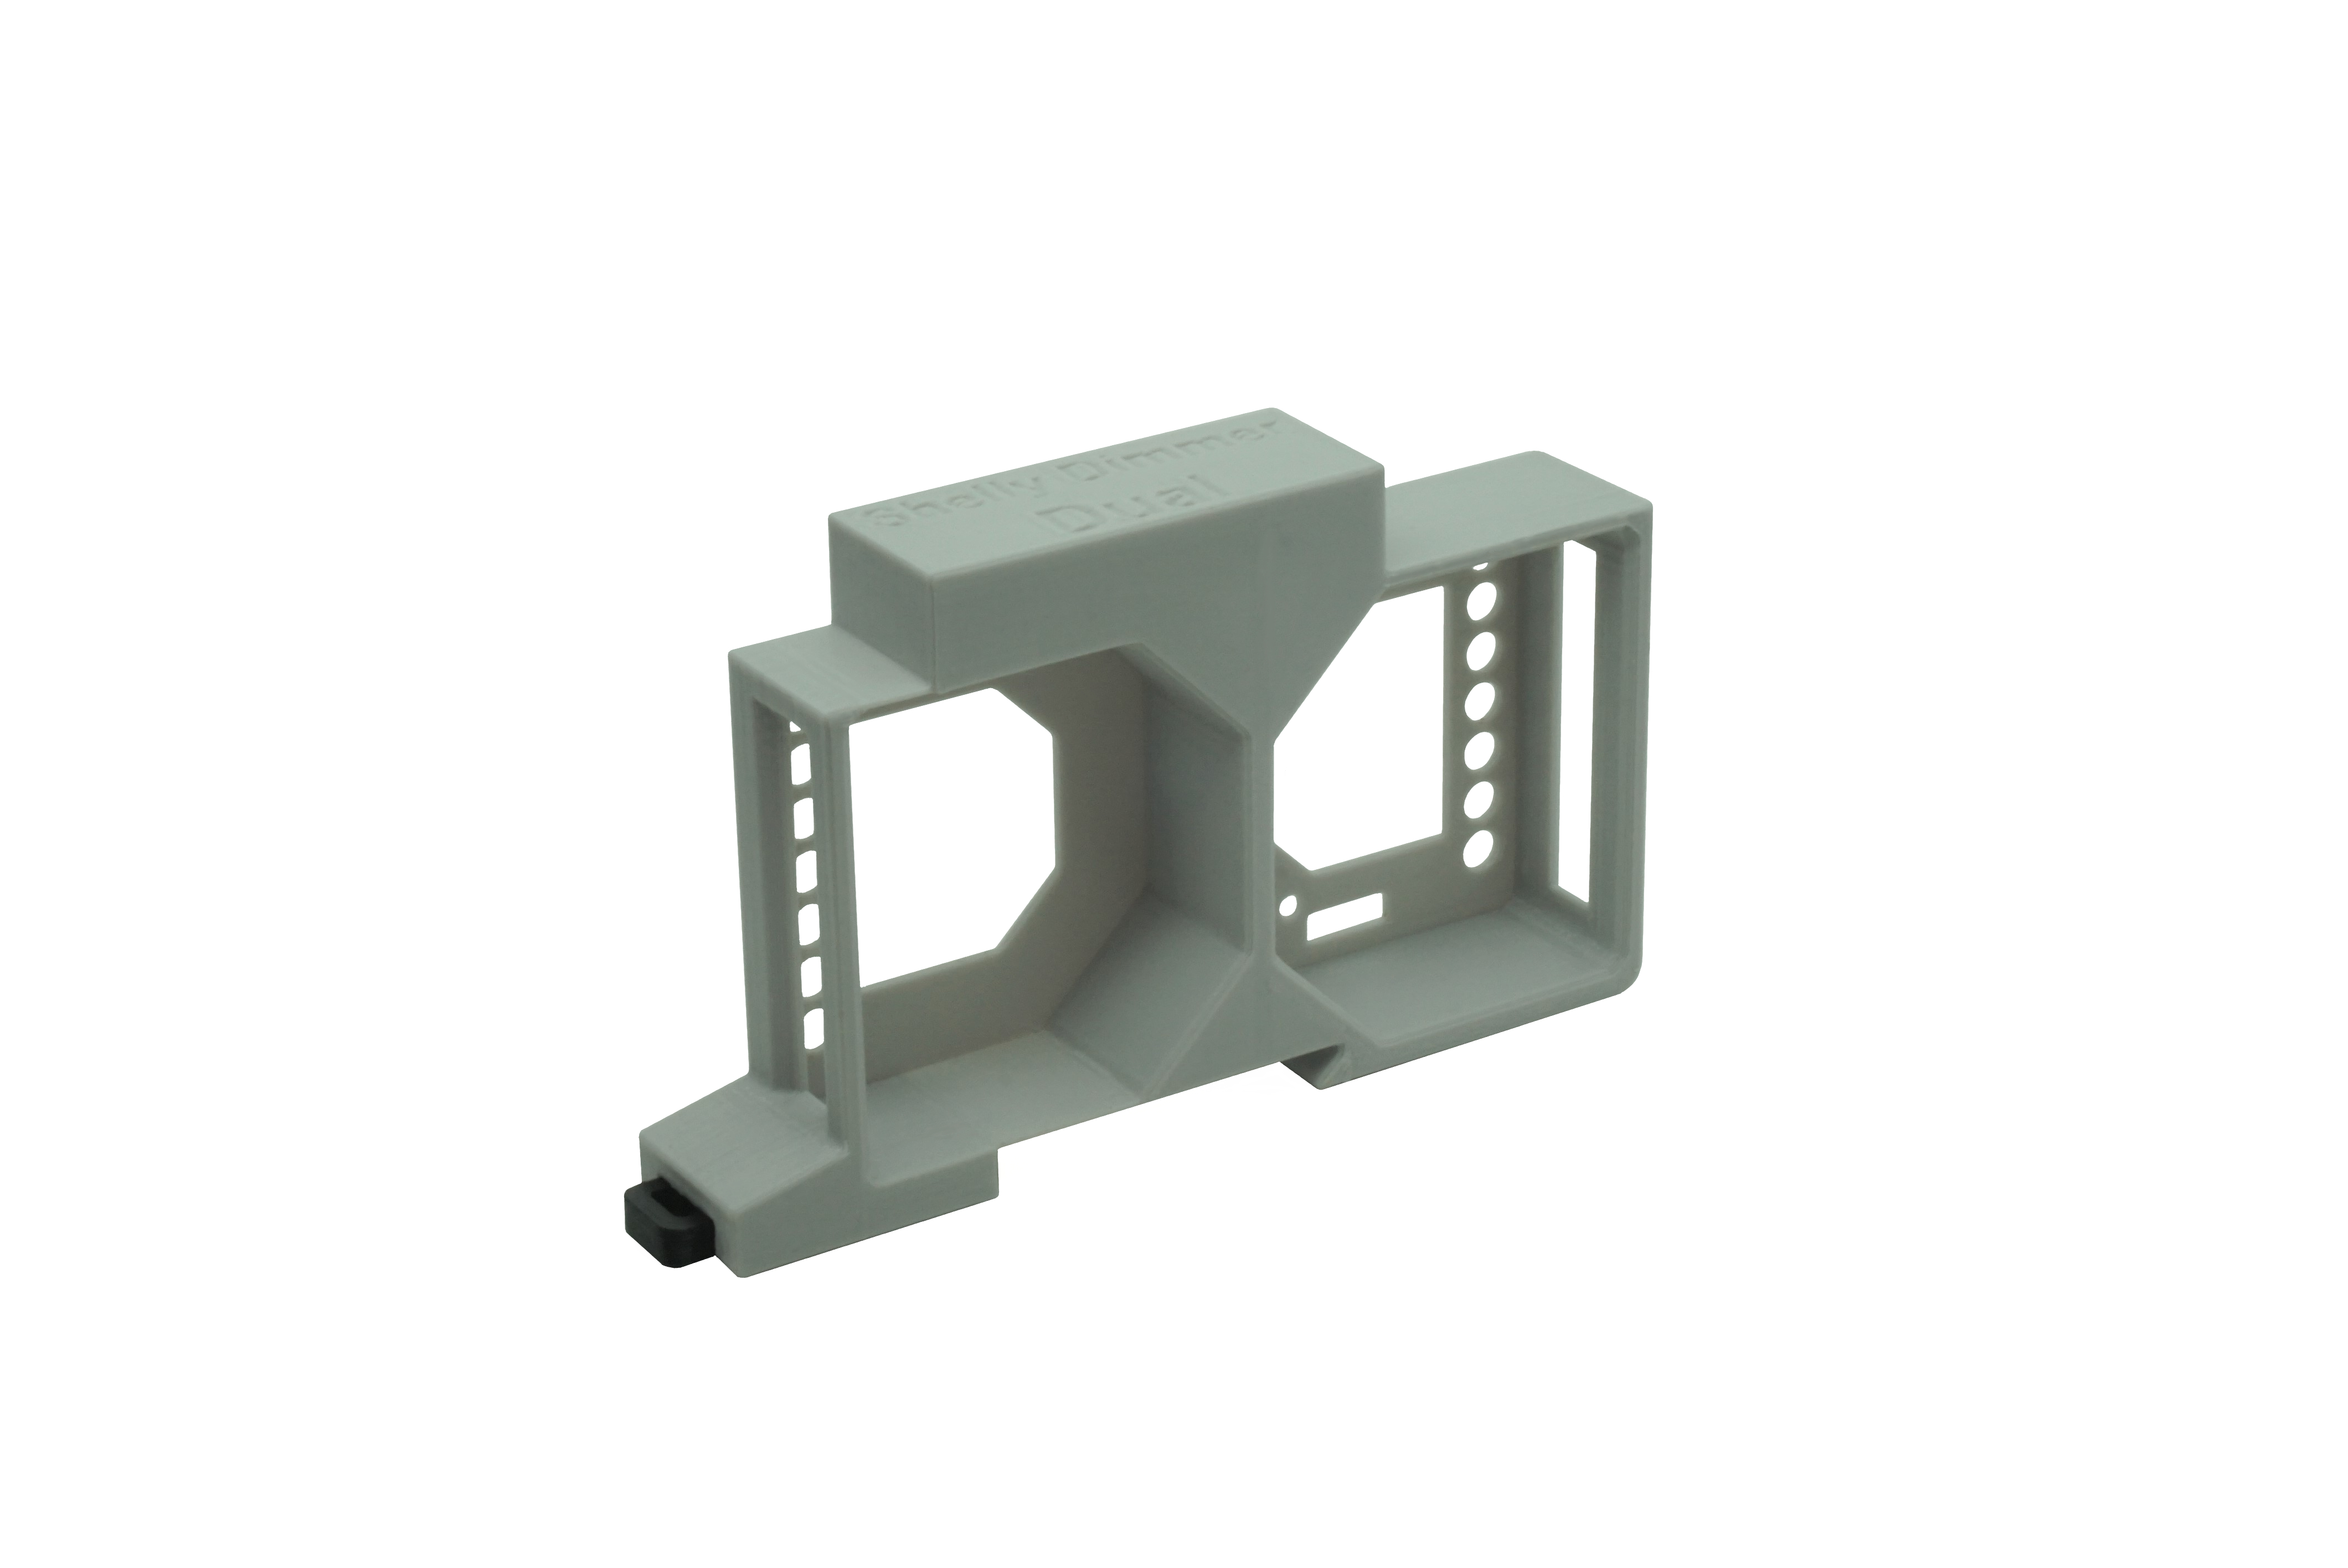 Hutschienenhalter / Adapter Dual für Shelly Dimmer 2 / Shelly 1L, für DIN Schiene 35mm, Farbe: Grau